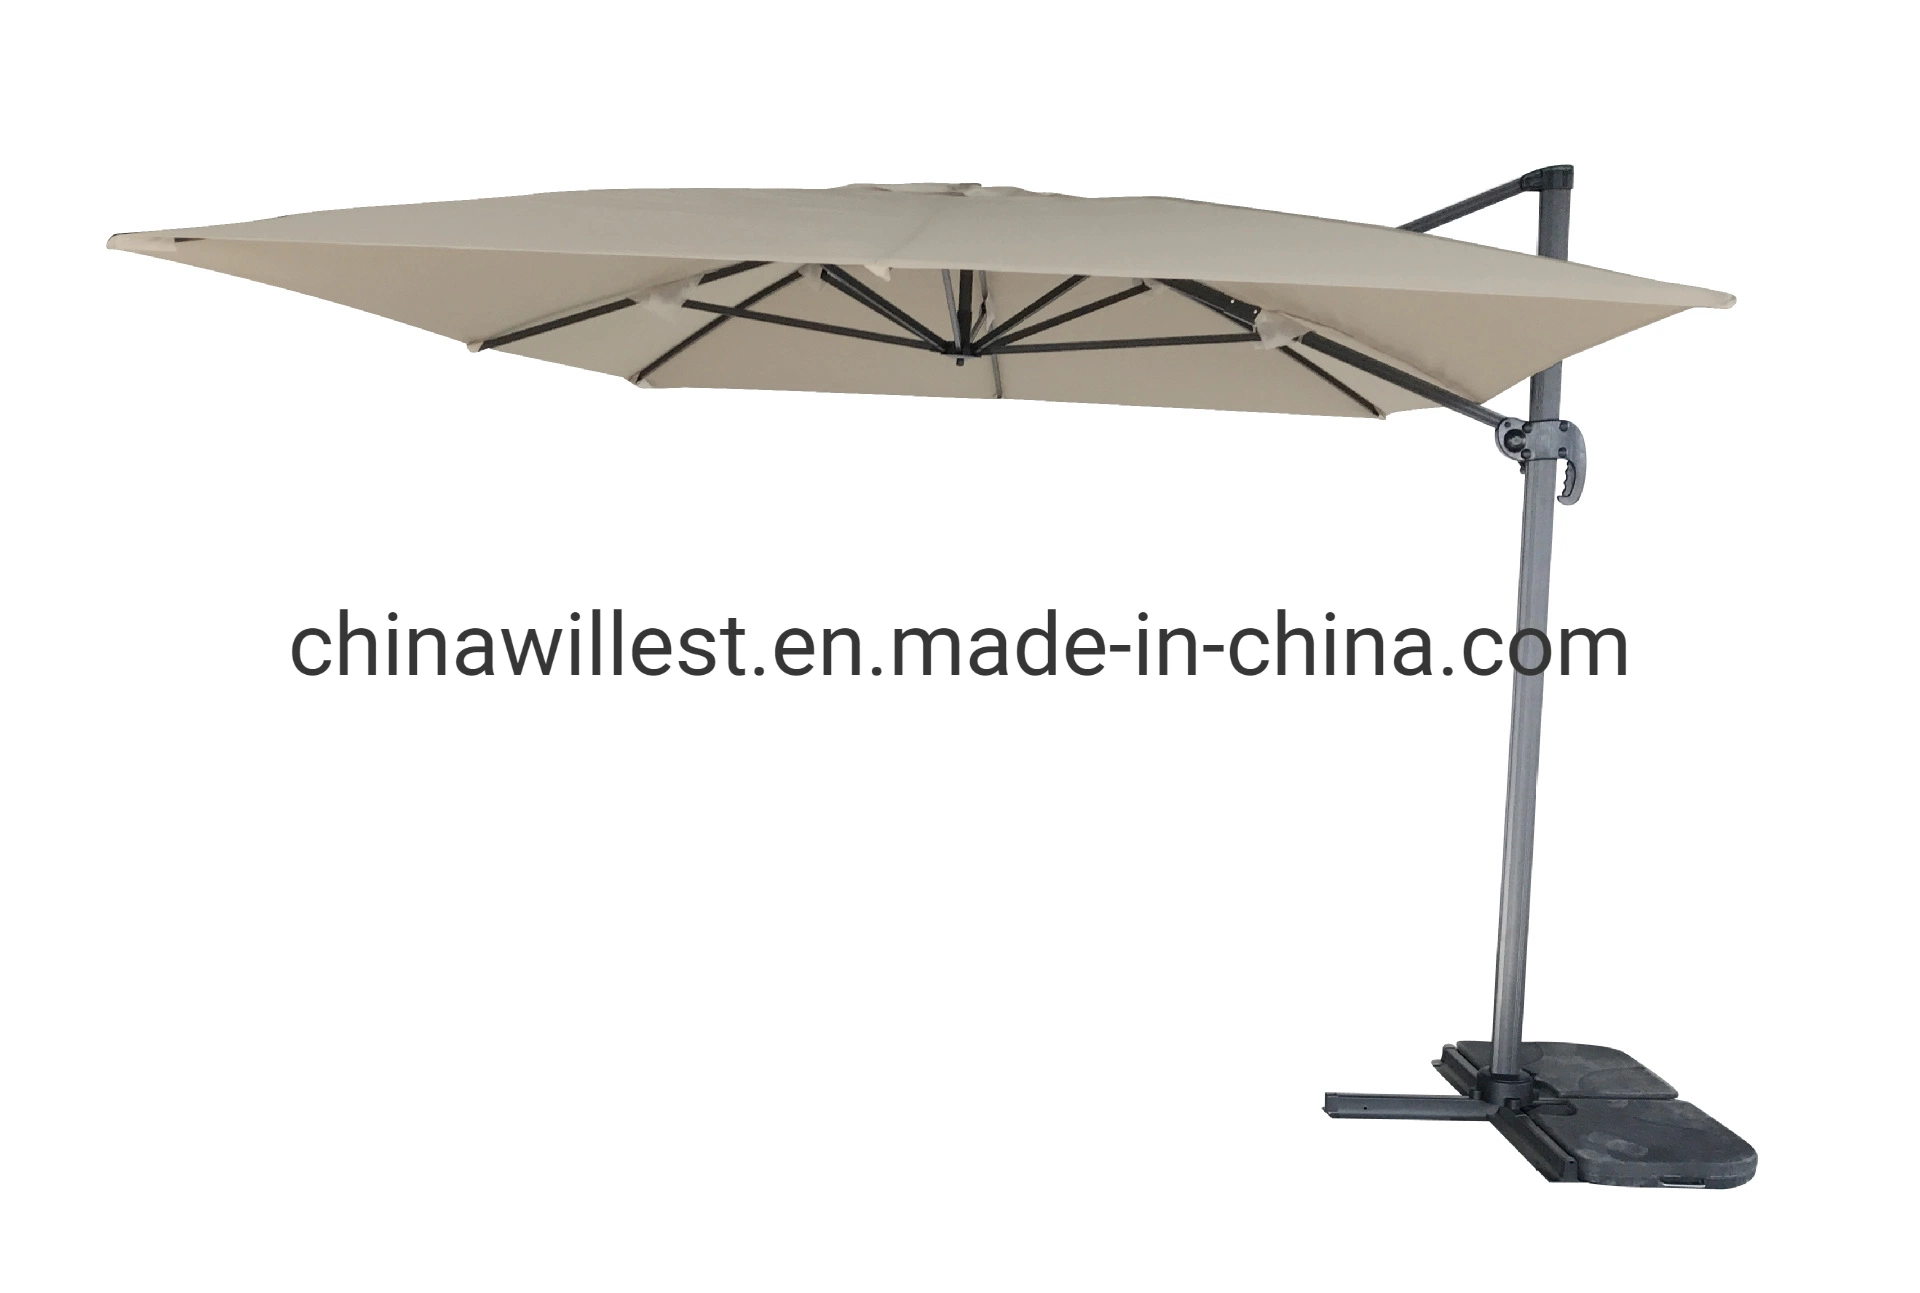 2021 Haut de page La vente commerciale de l'aluminium romain de plein air Parasol Jardin Cantilever parapluie avec voyant LED